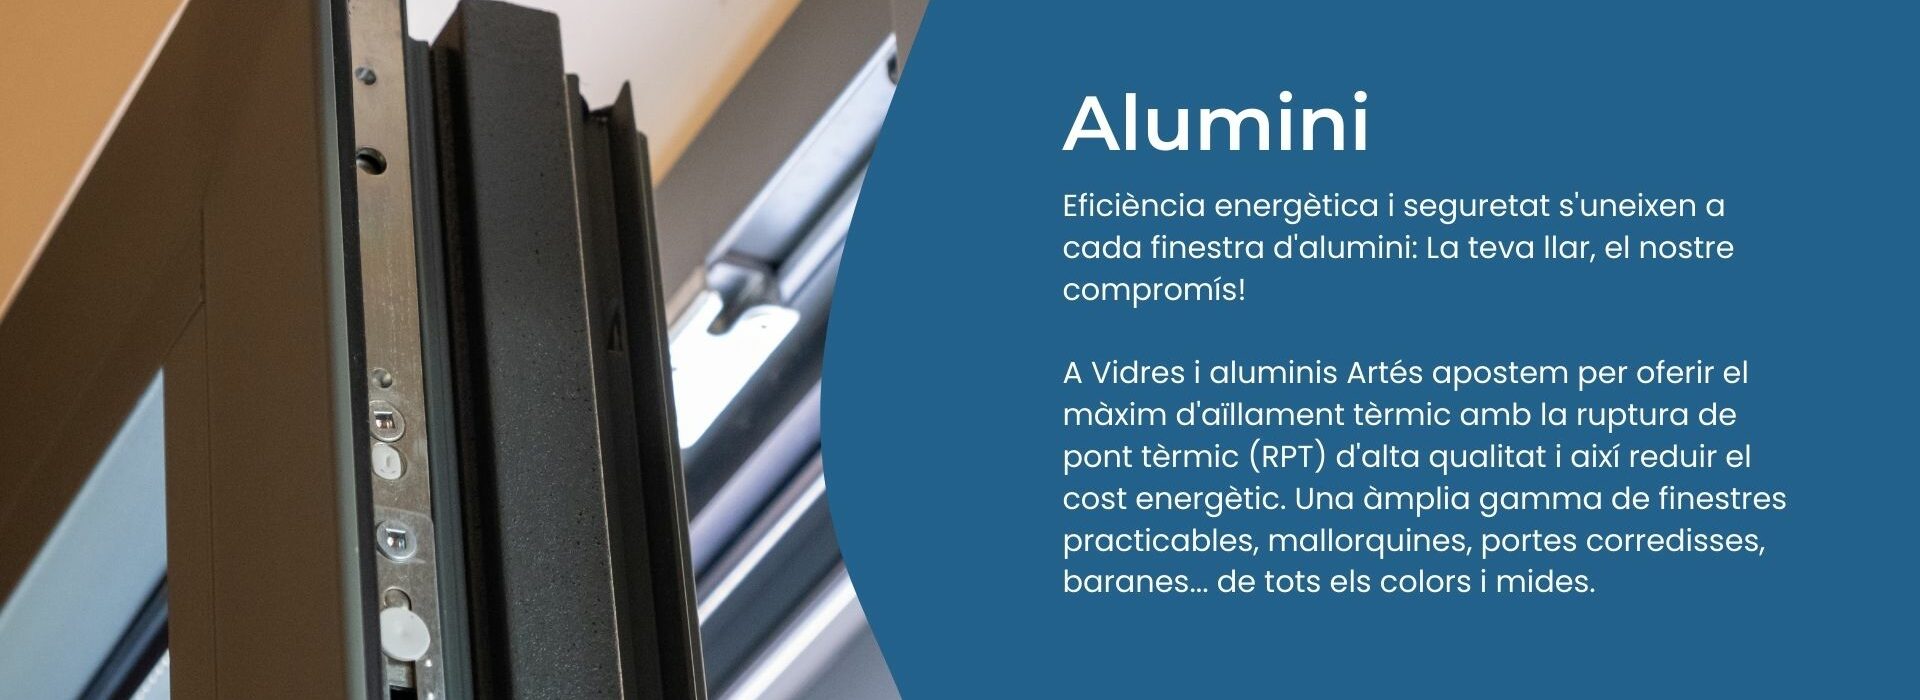 alumini1